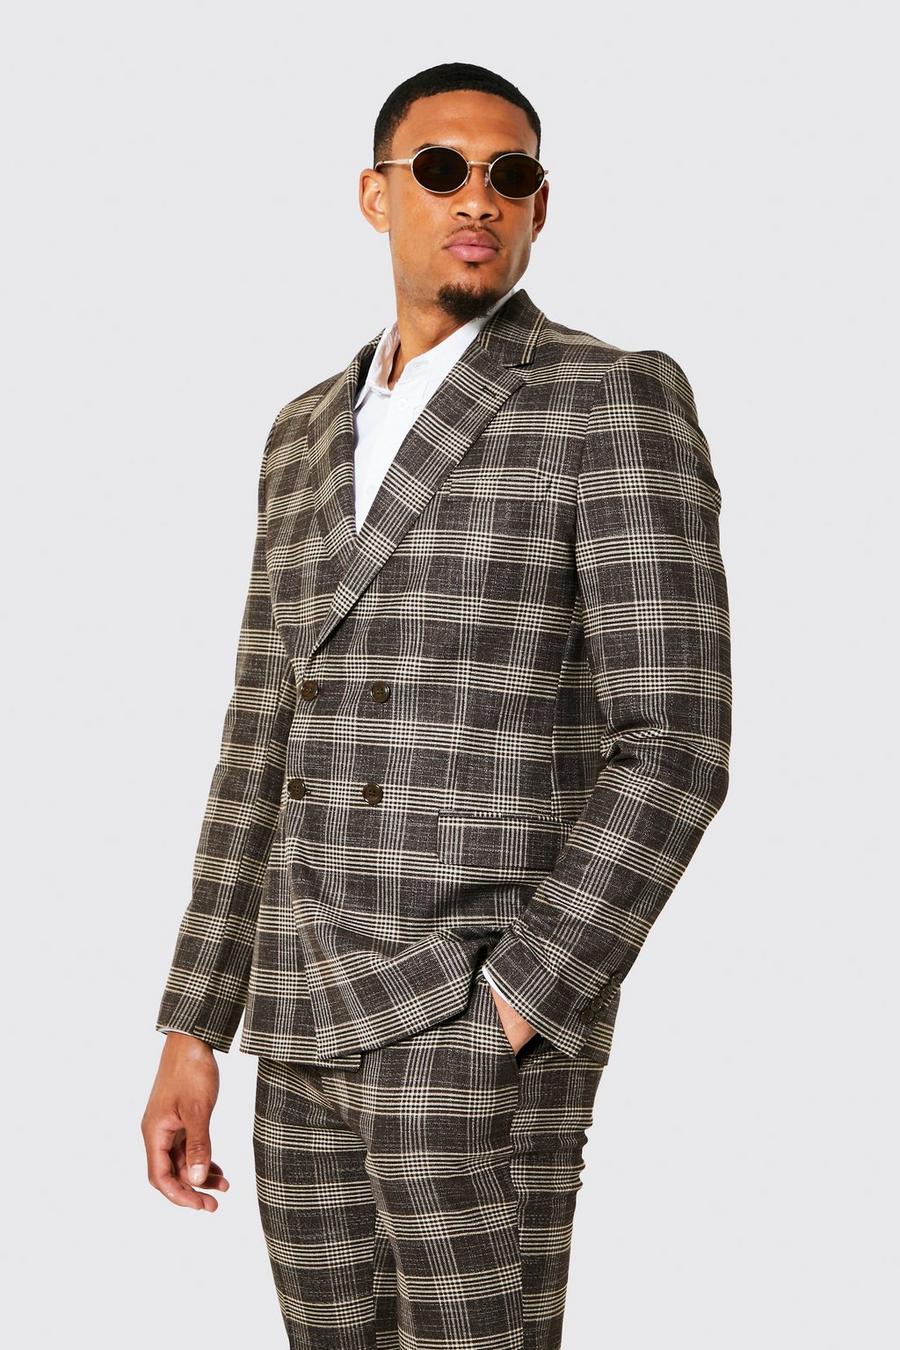 חום brown ז'קט חליפה בגזרה צרה עם הדפס משבצות ודשים כפולים, לגברים גבוהים